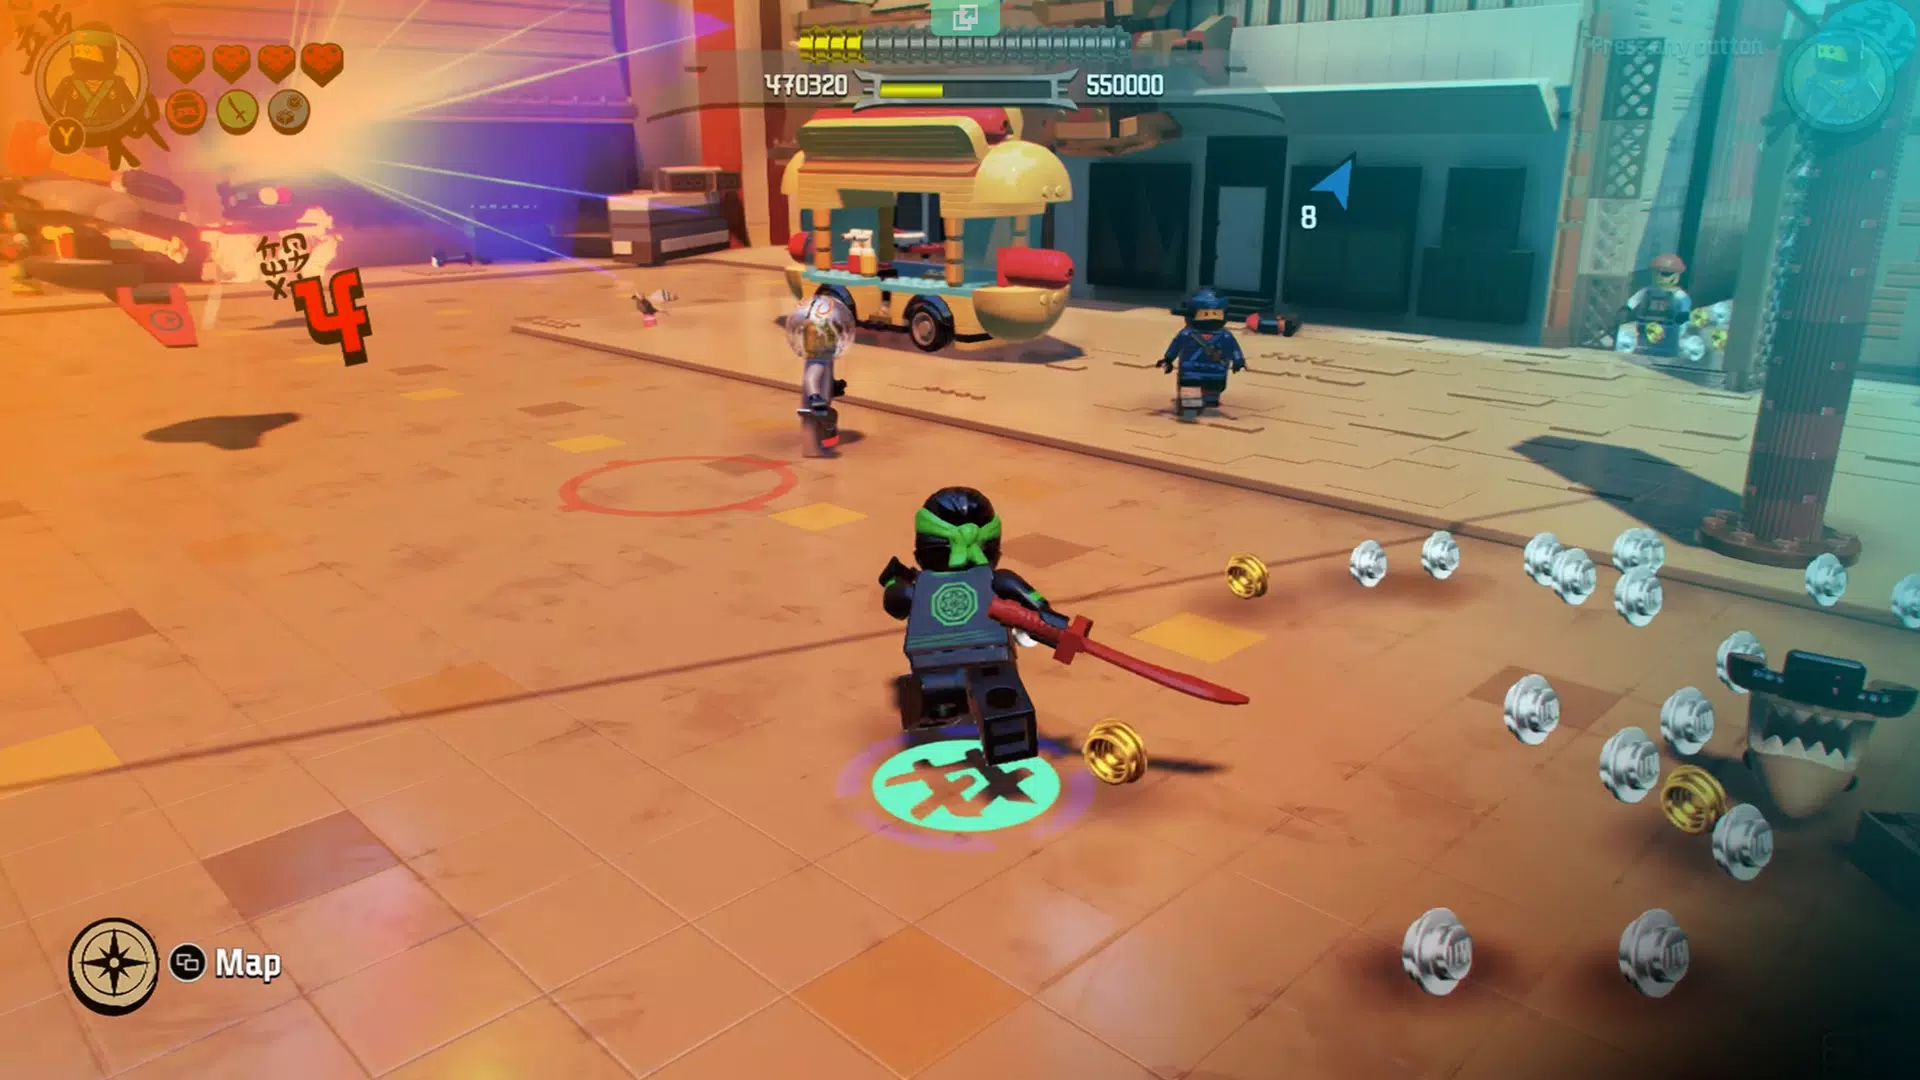 Descarga de APK de TopGuide The LEGO Ninjago Movie Videogame para Android